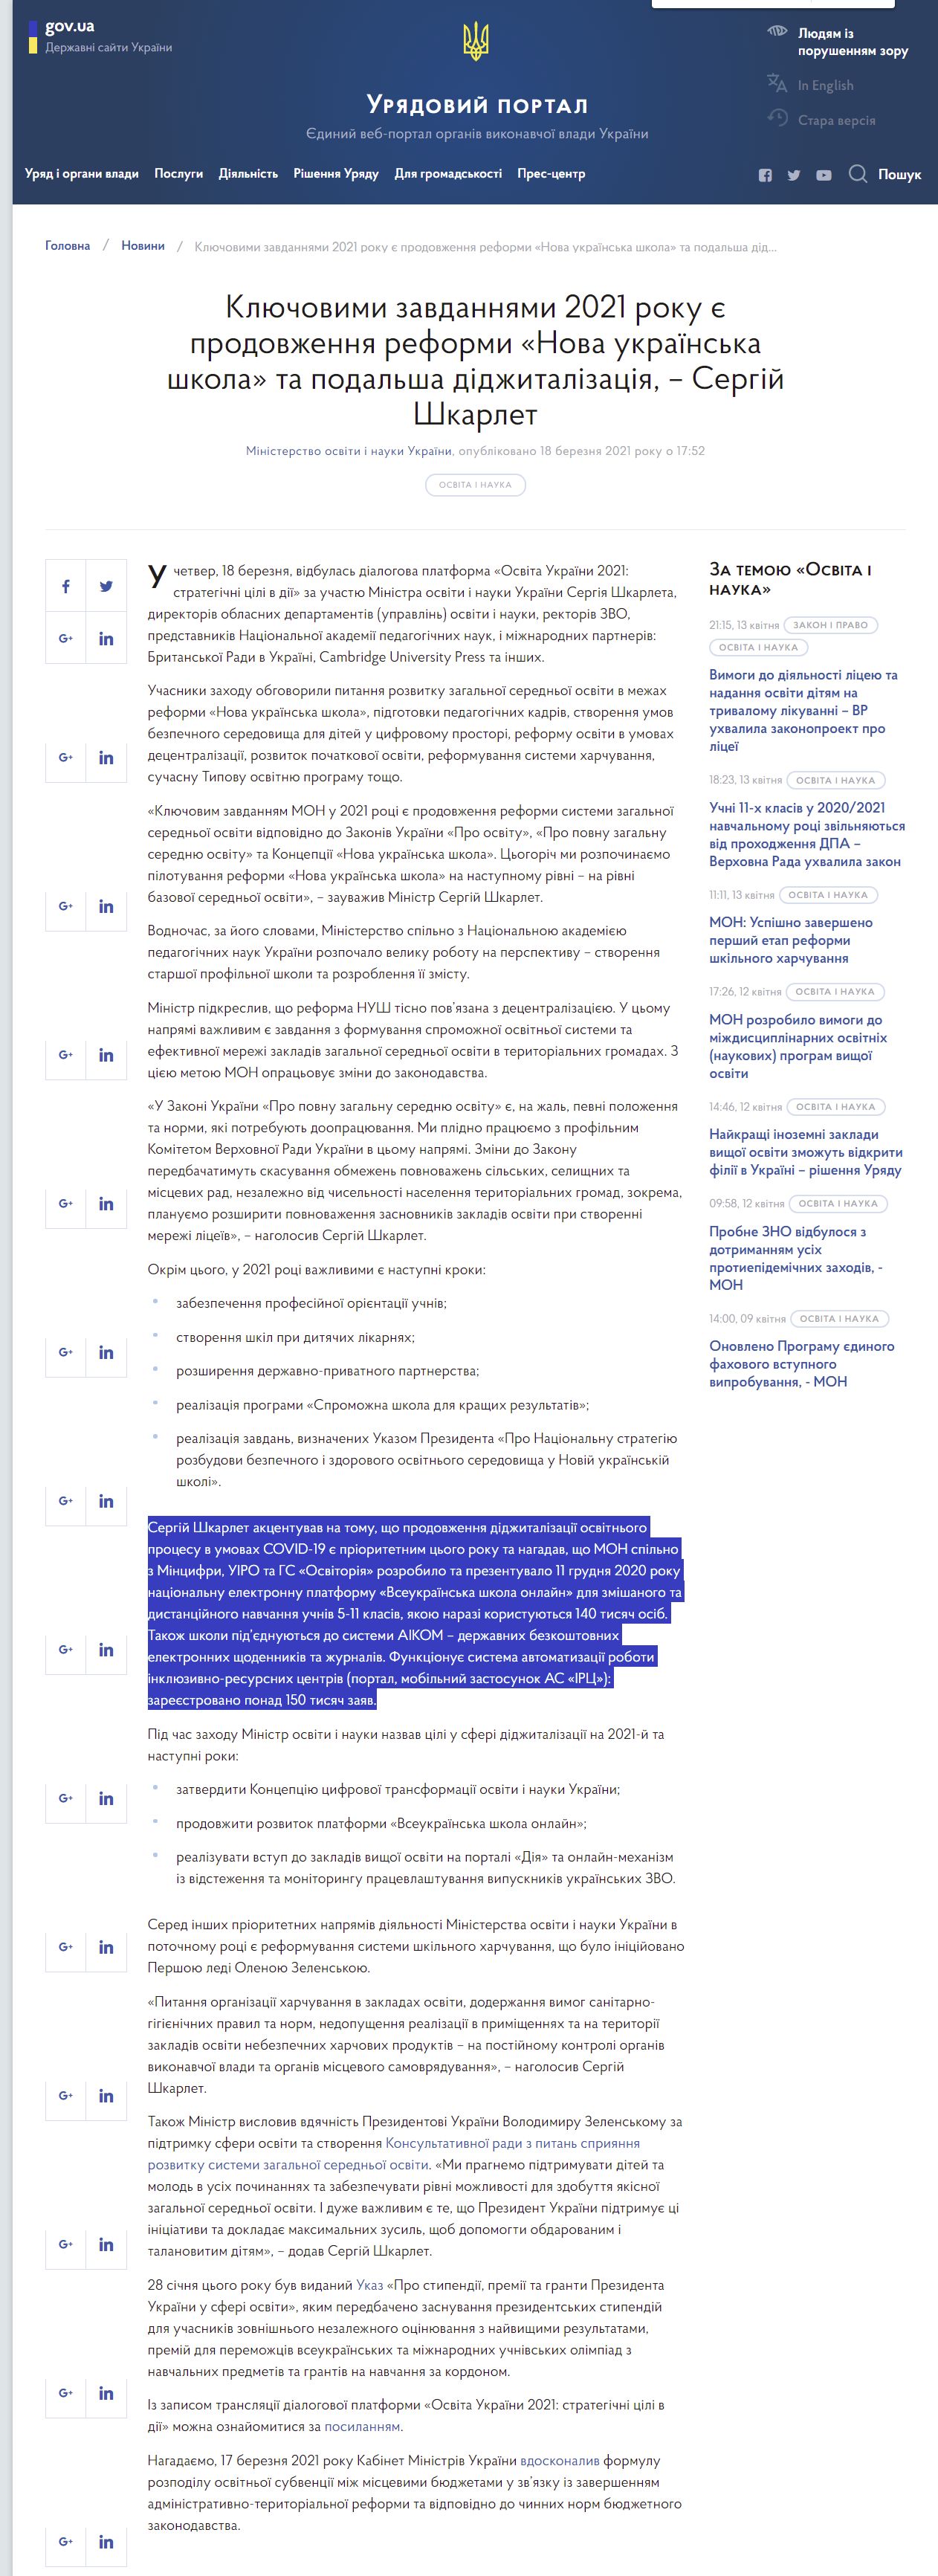 https://www.kmu.gov.ua/news/klyuchovimi-zavdannyami-2021-roku-ye-prodovzhennya-reformi-nova-ukrayinska-shkola-ta-podalsha-didzhitalizaciya-sergij-shkarlet-pid-chas-platformi-osvita-ukrayini-2021-strategichni-cili-v-diyi